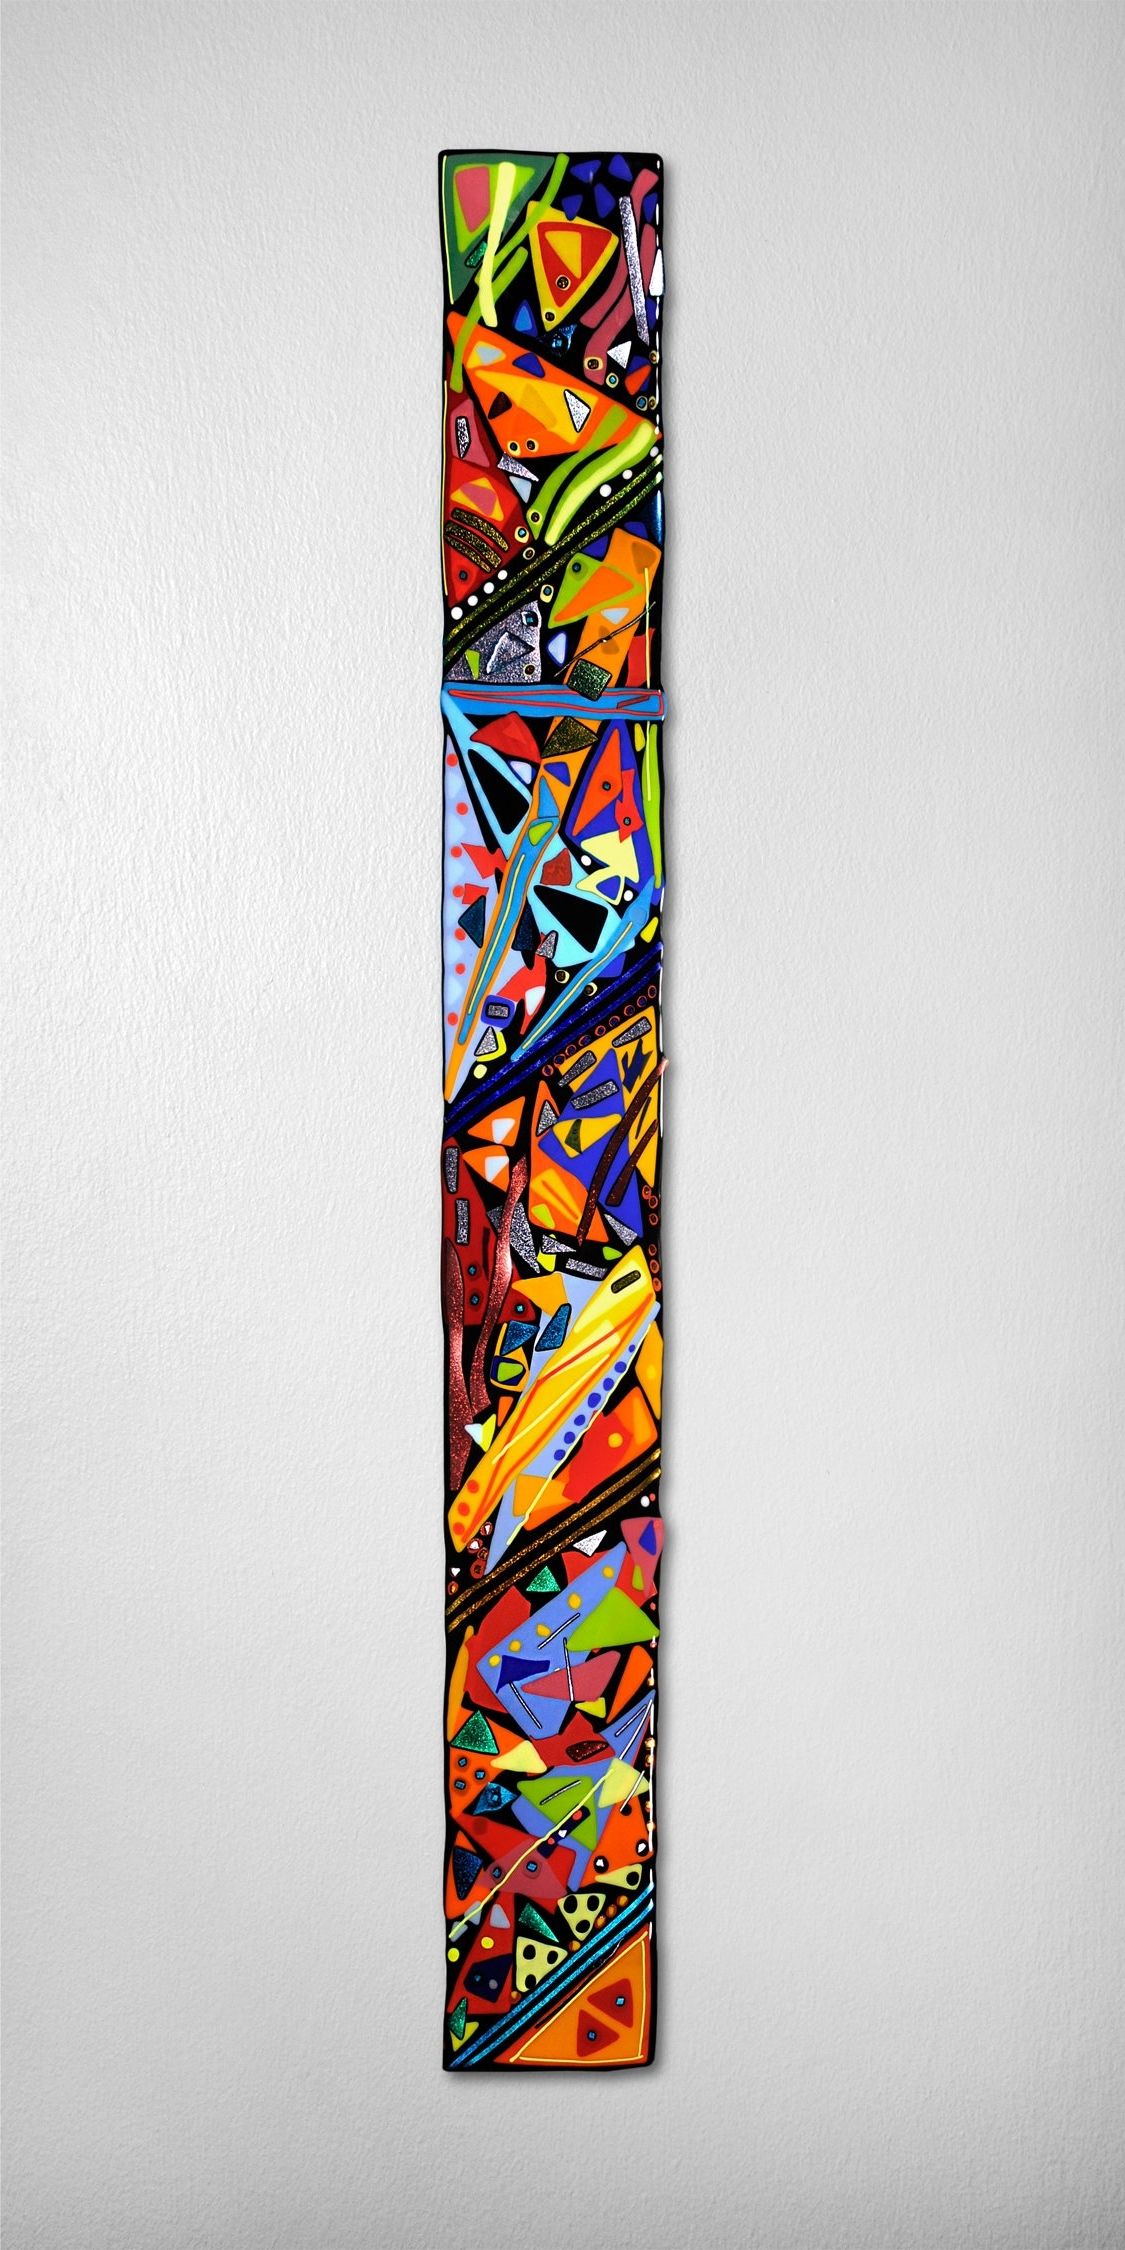 Famous Glass Wall Art Panels Within Mardi Gras Wall Panelhelen Rudy (art Glass Wall Sculpture (View 6 of 15)